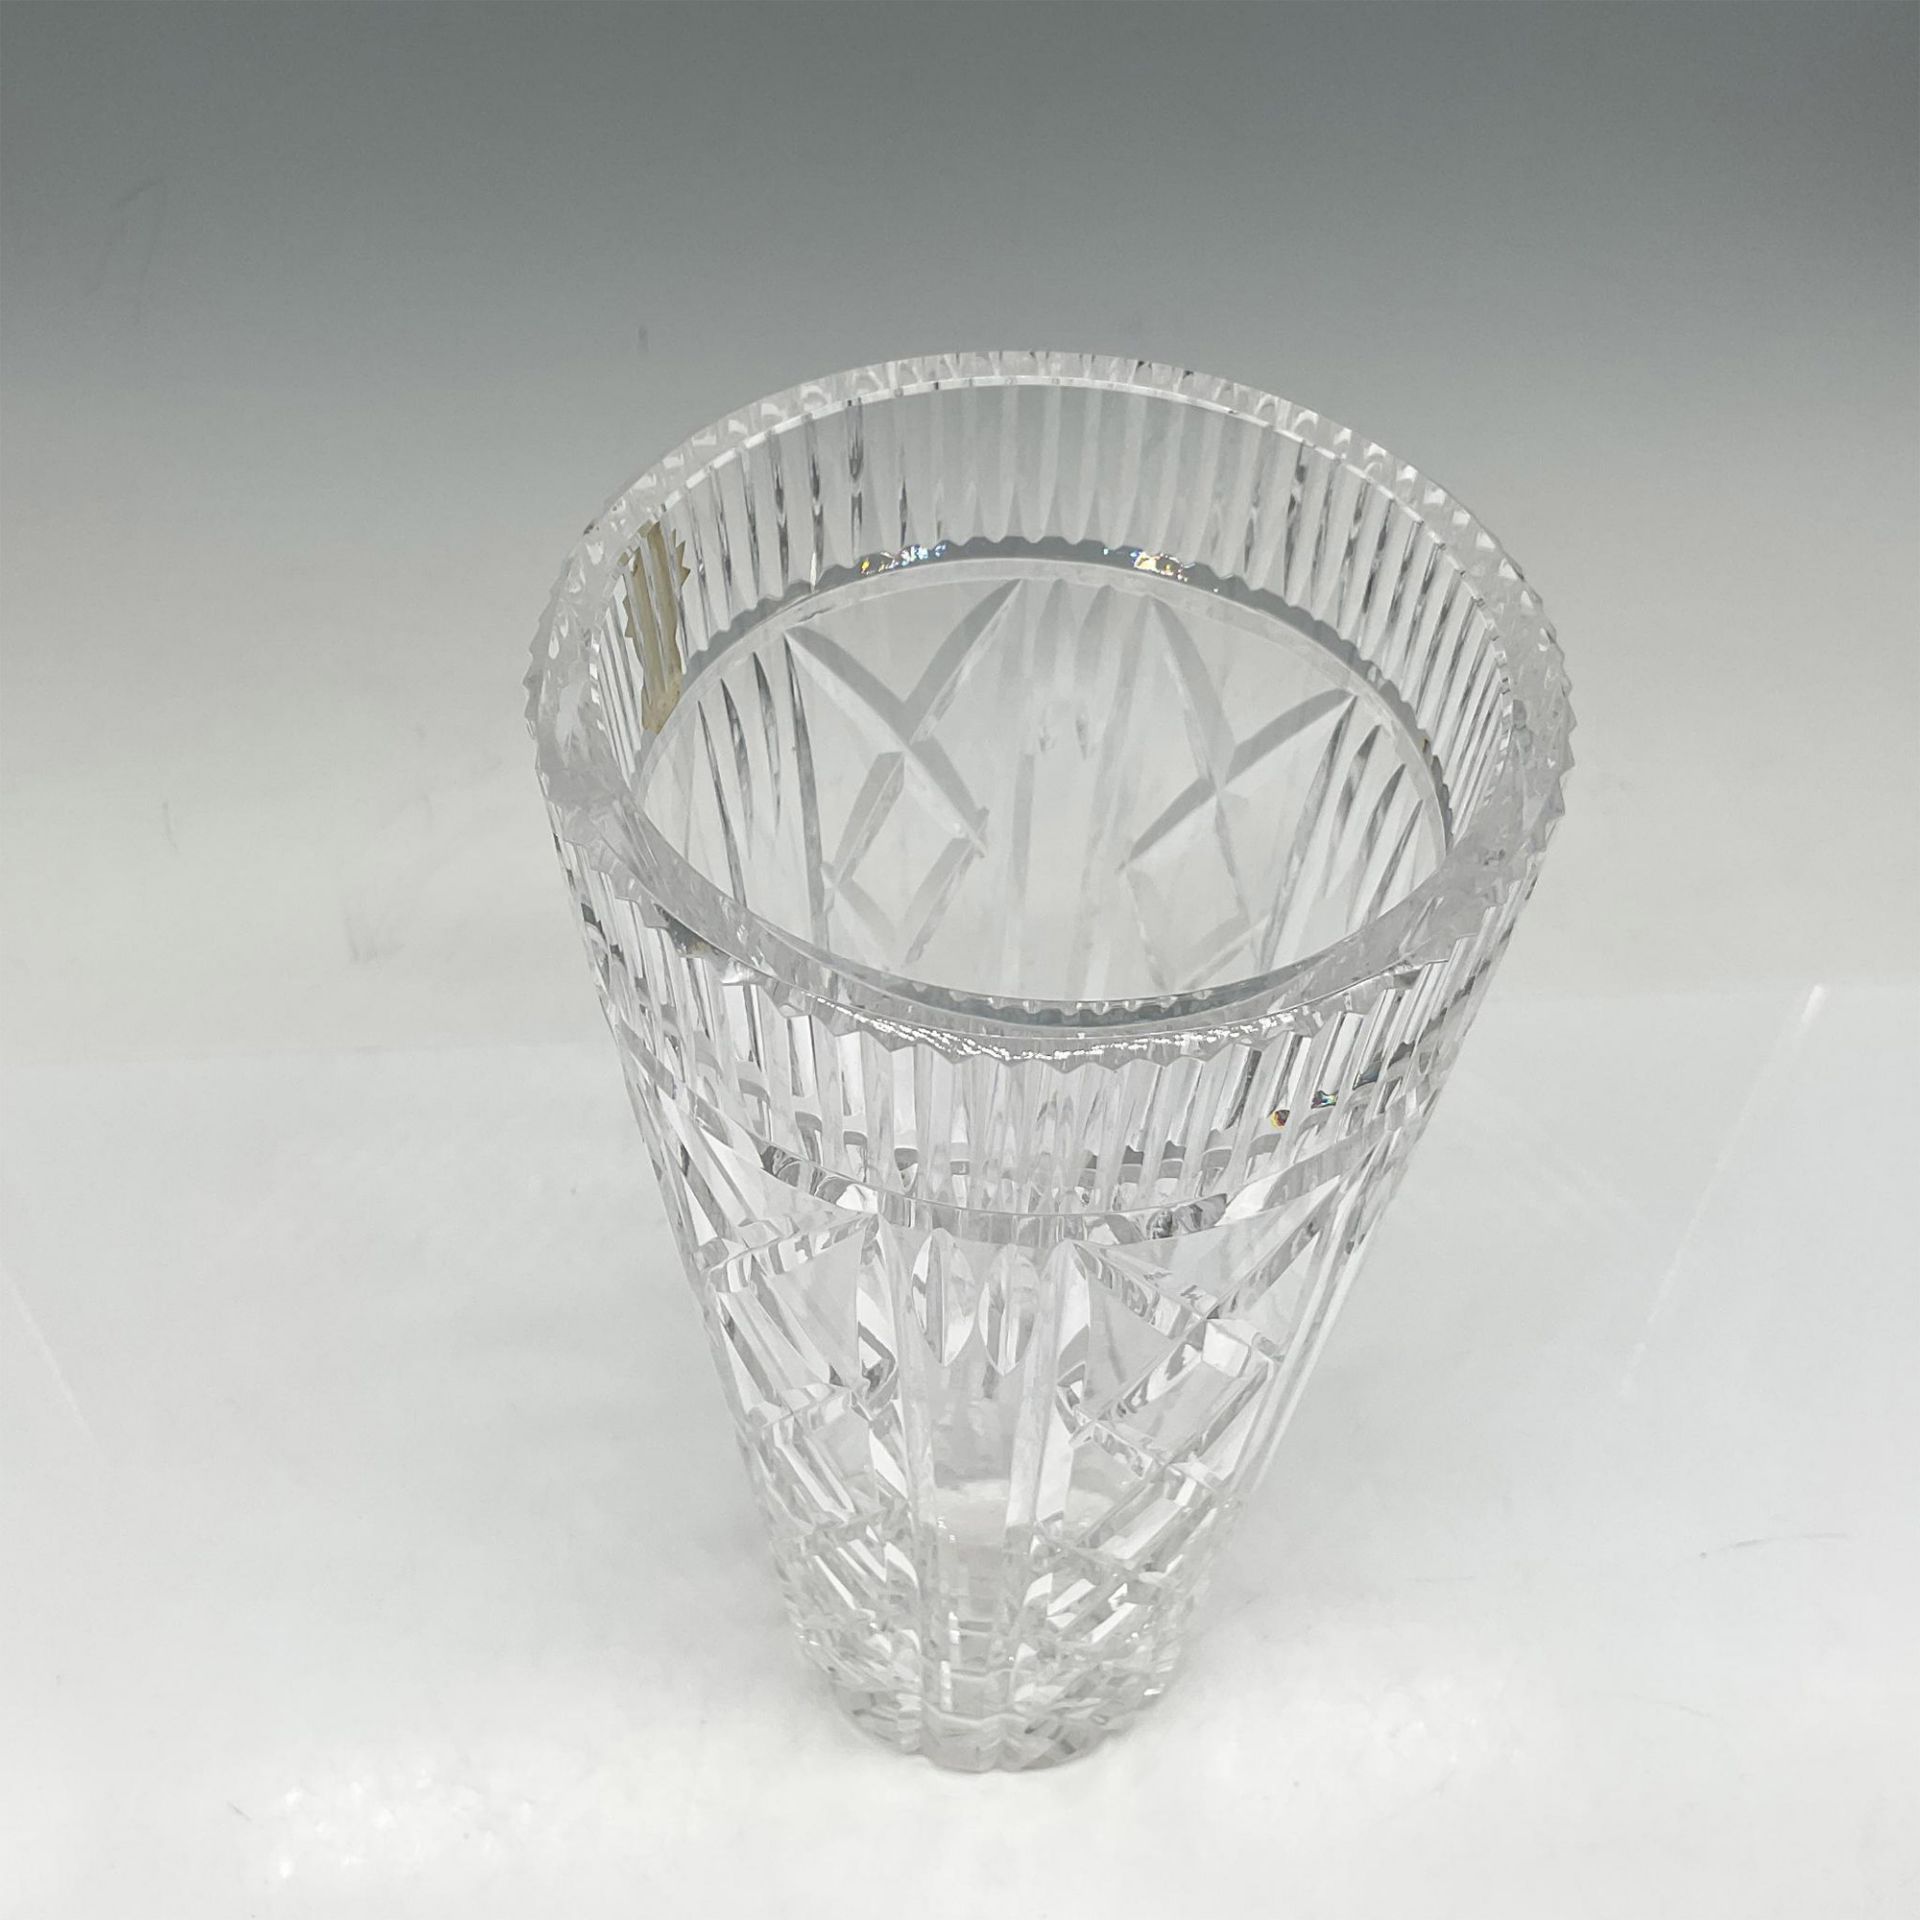 Waterford Crystal Vase 8" - Image 2 of 3